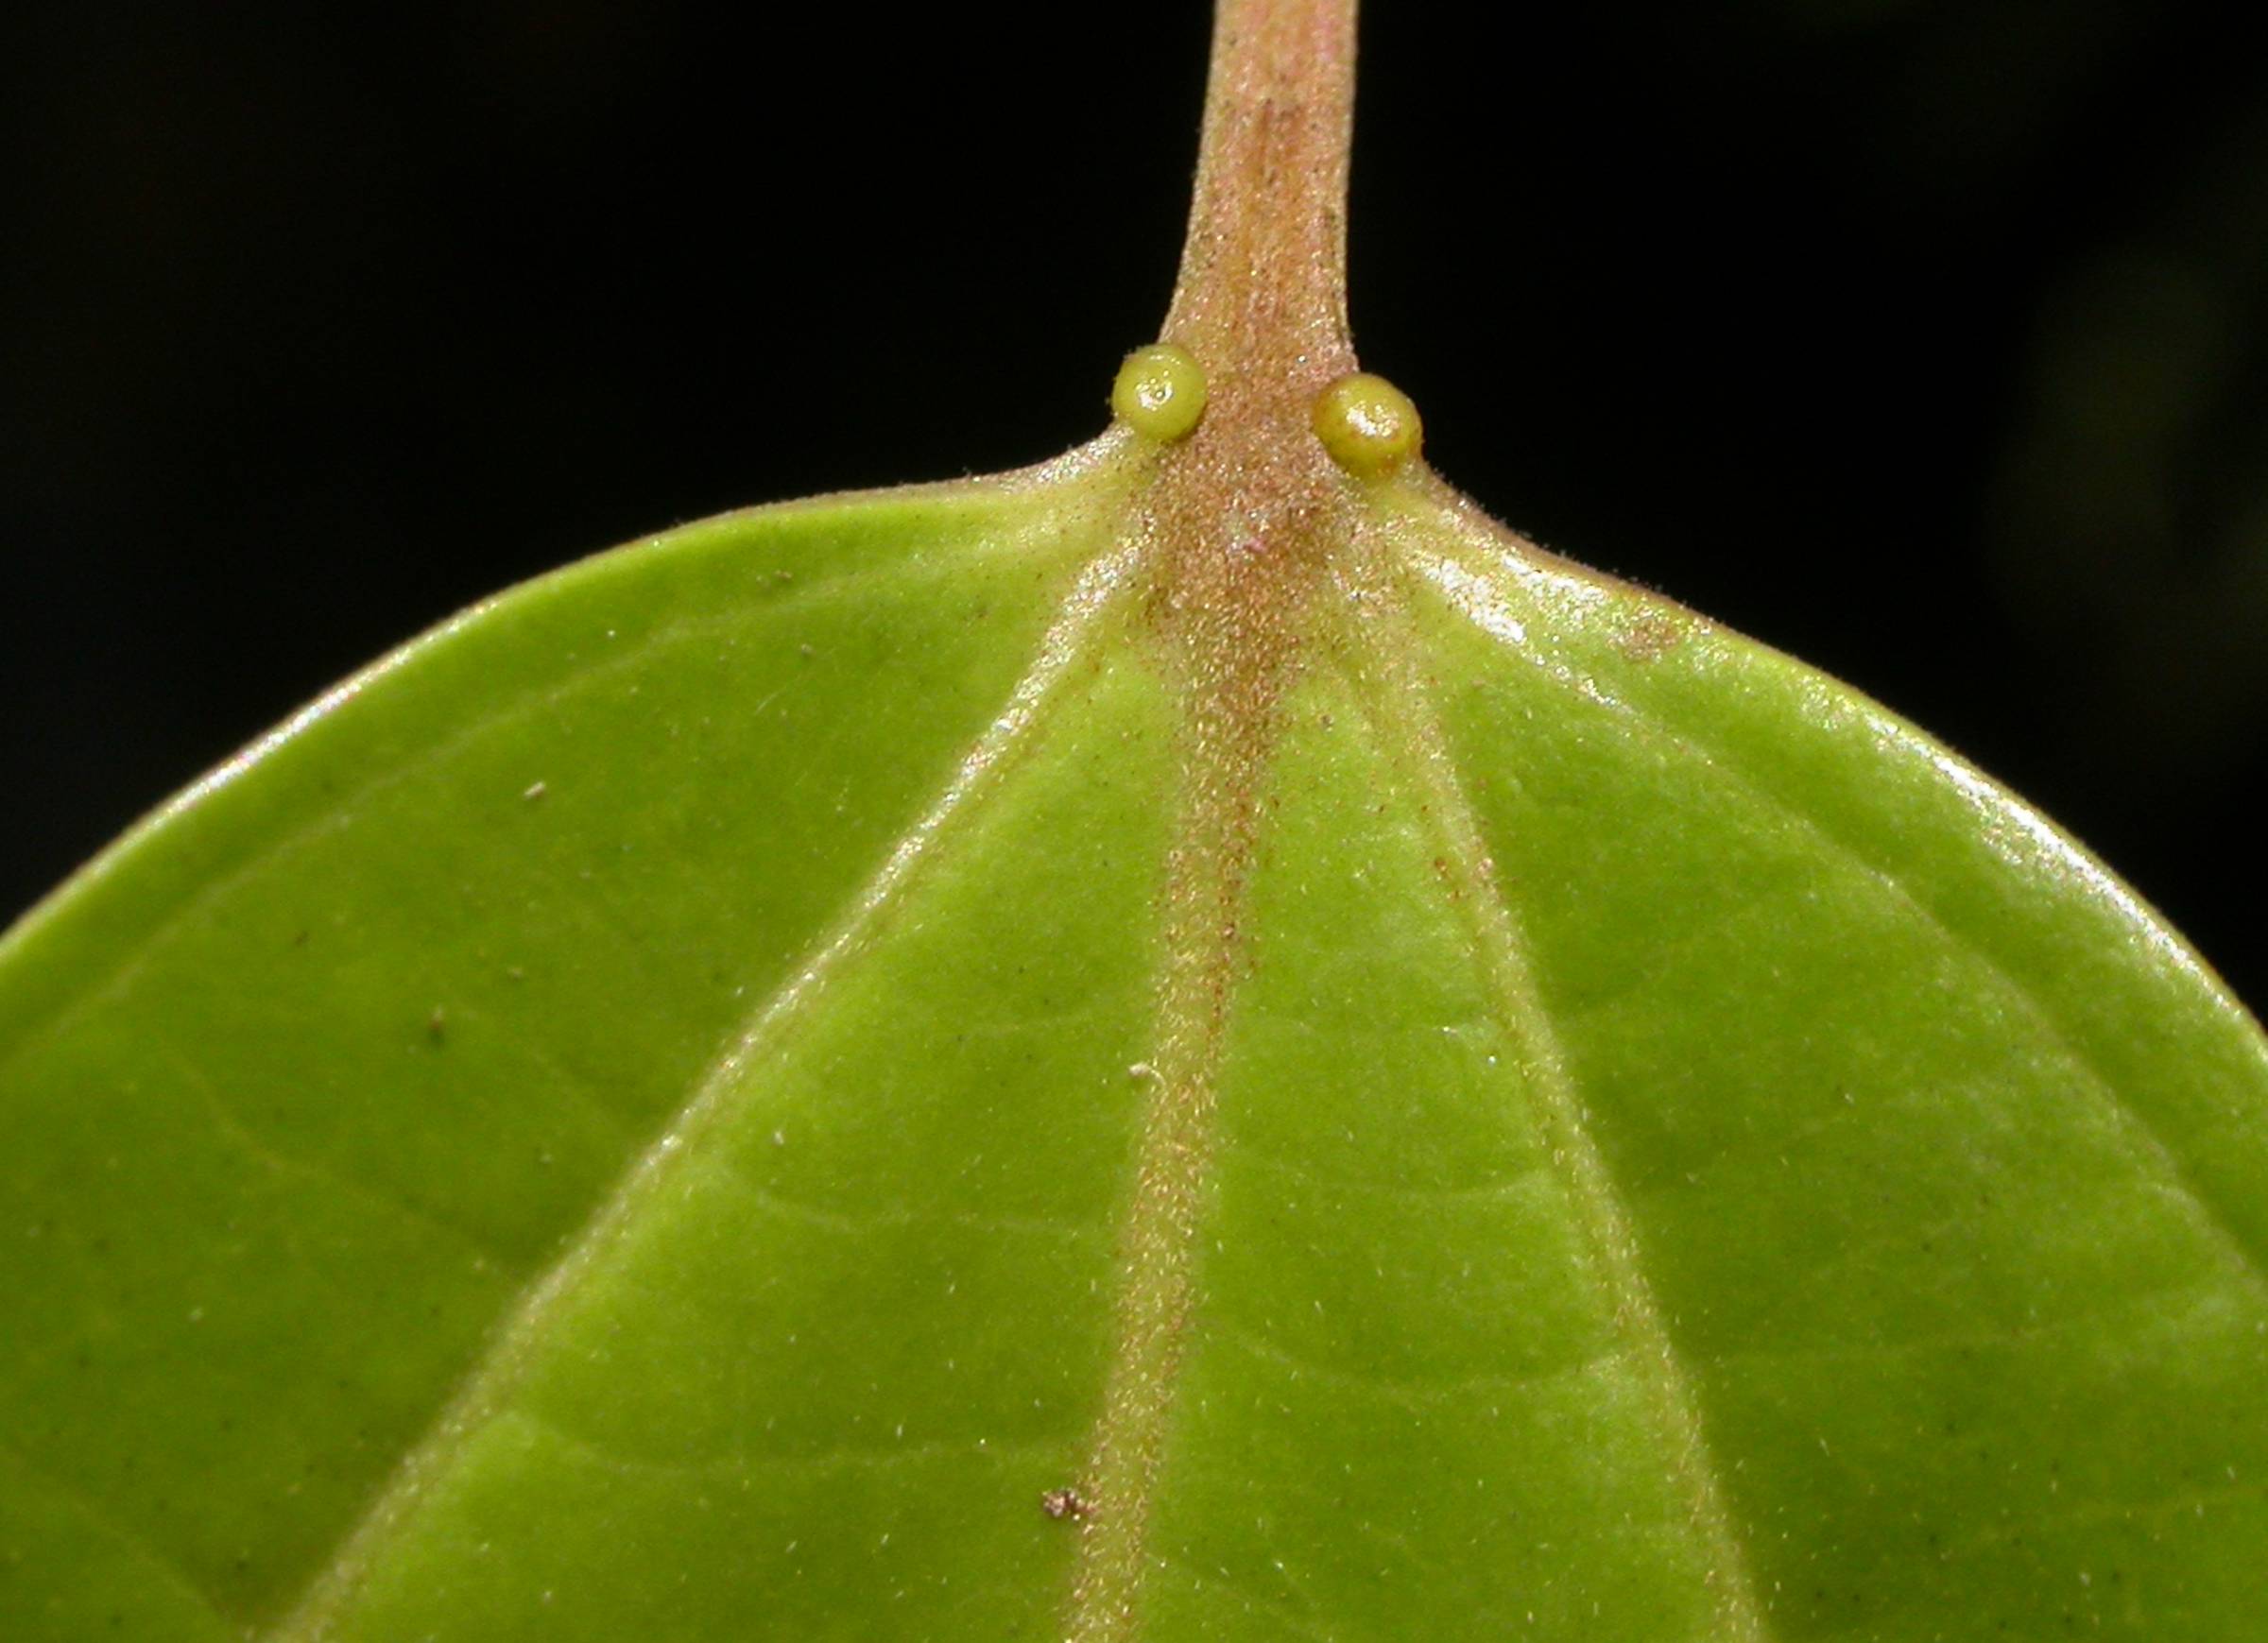 Salicaceae Pleuranthodendron lindenii